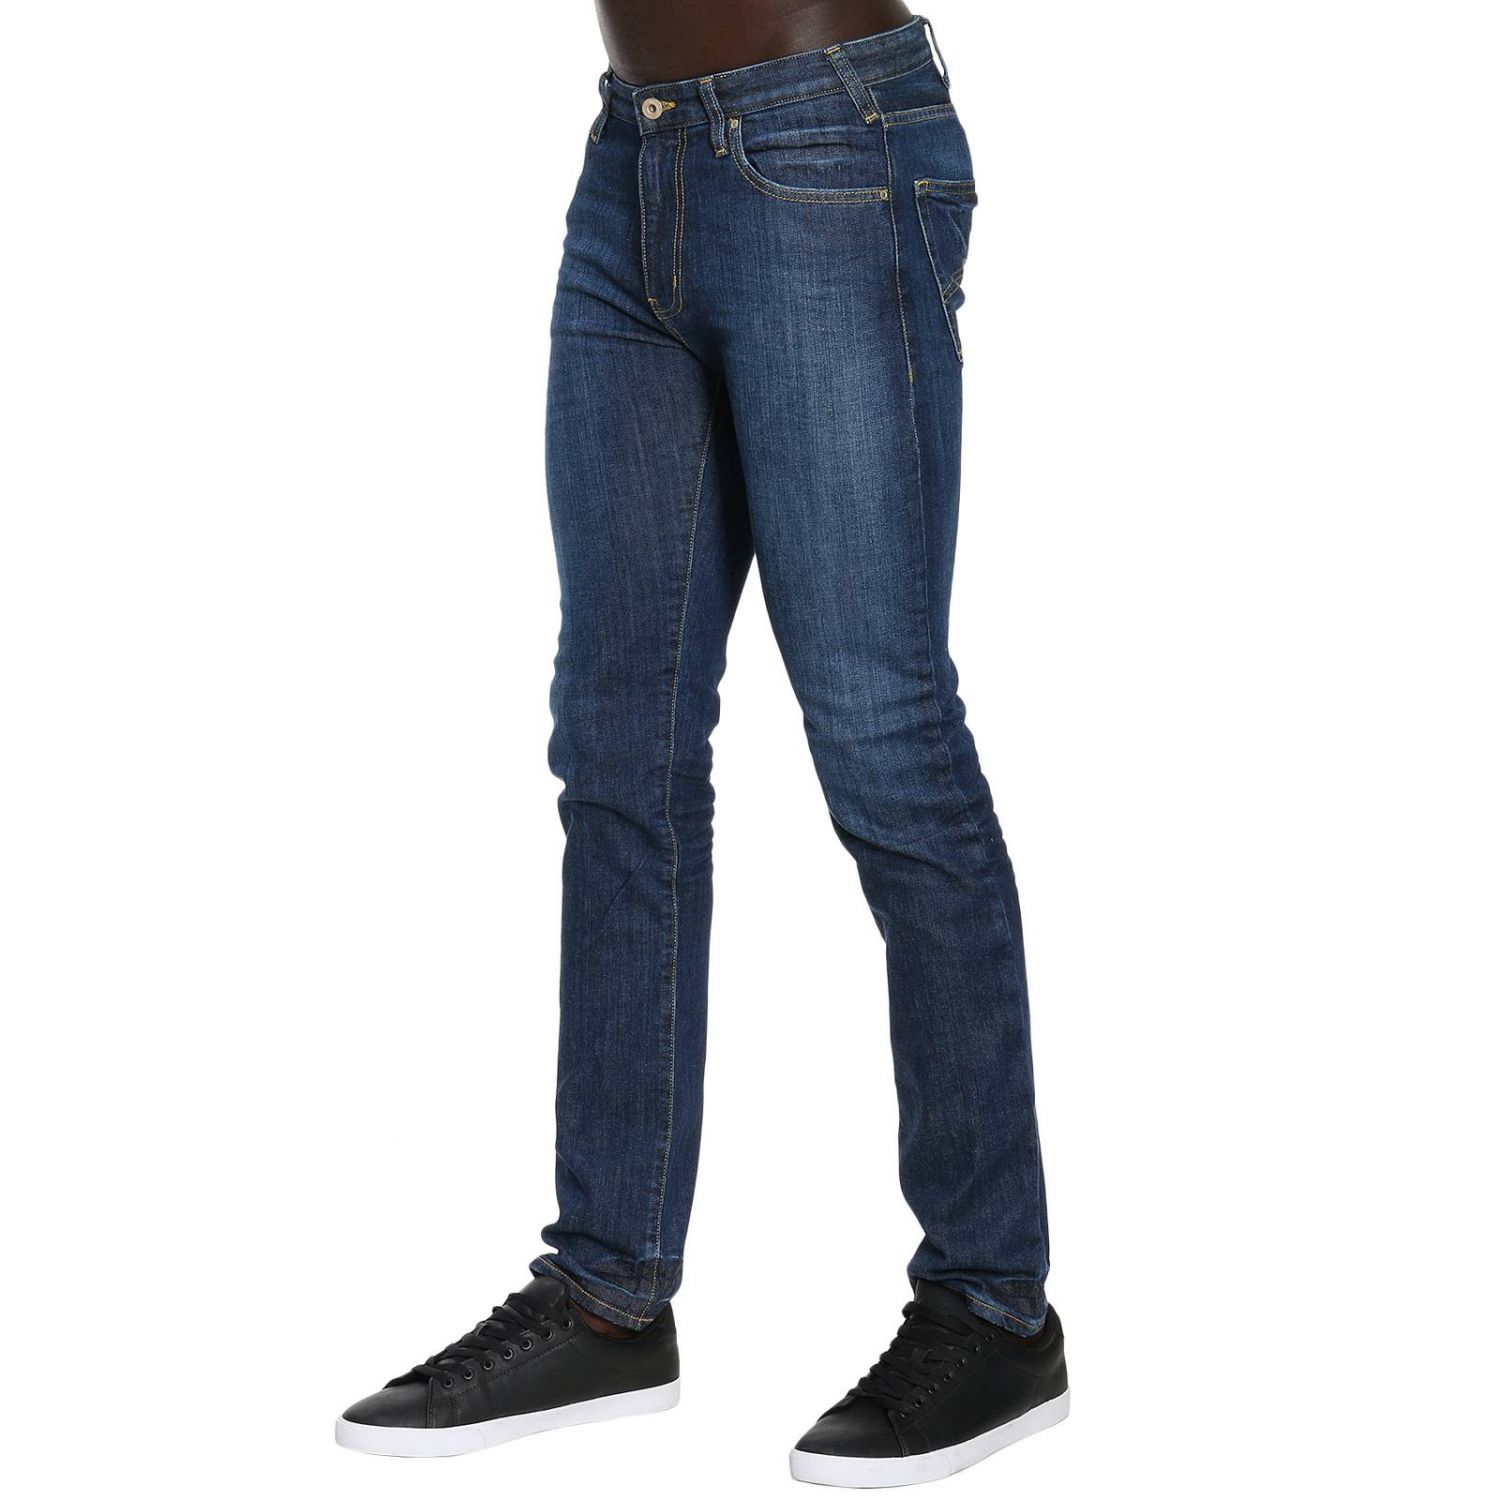 Armani Jeans Outlet: Jeans men | Jeans Armani Jeans Men Denim | Jeans ...